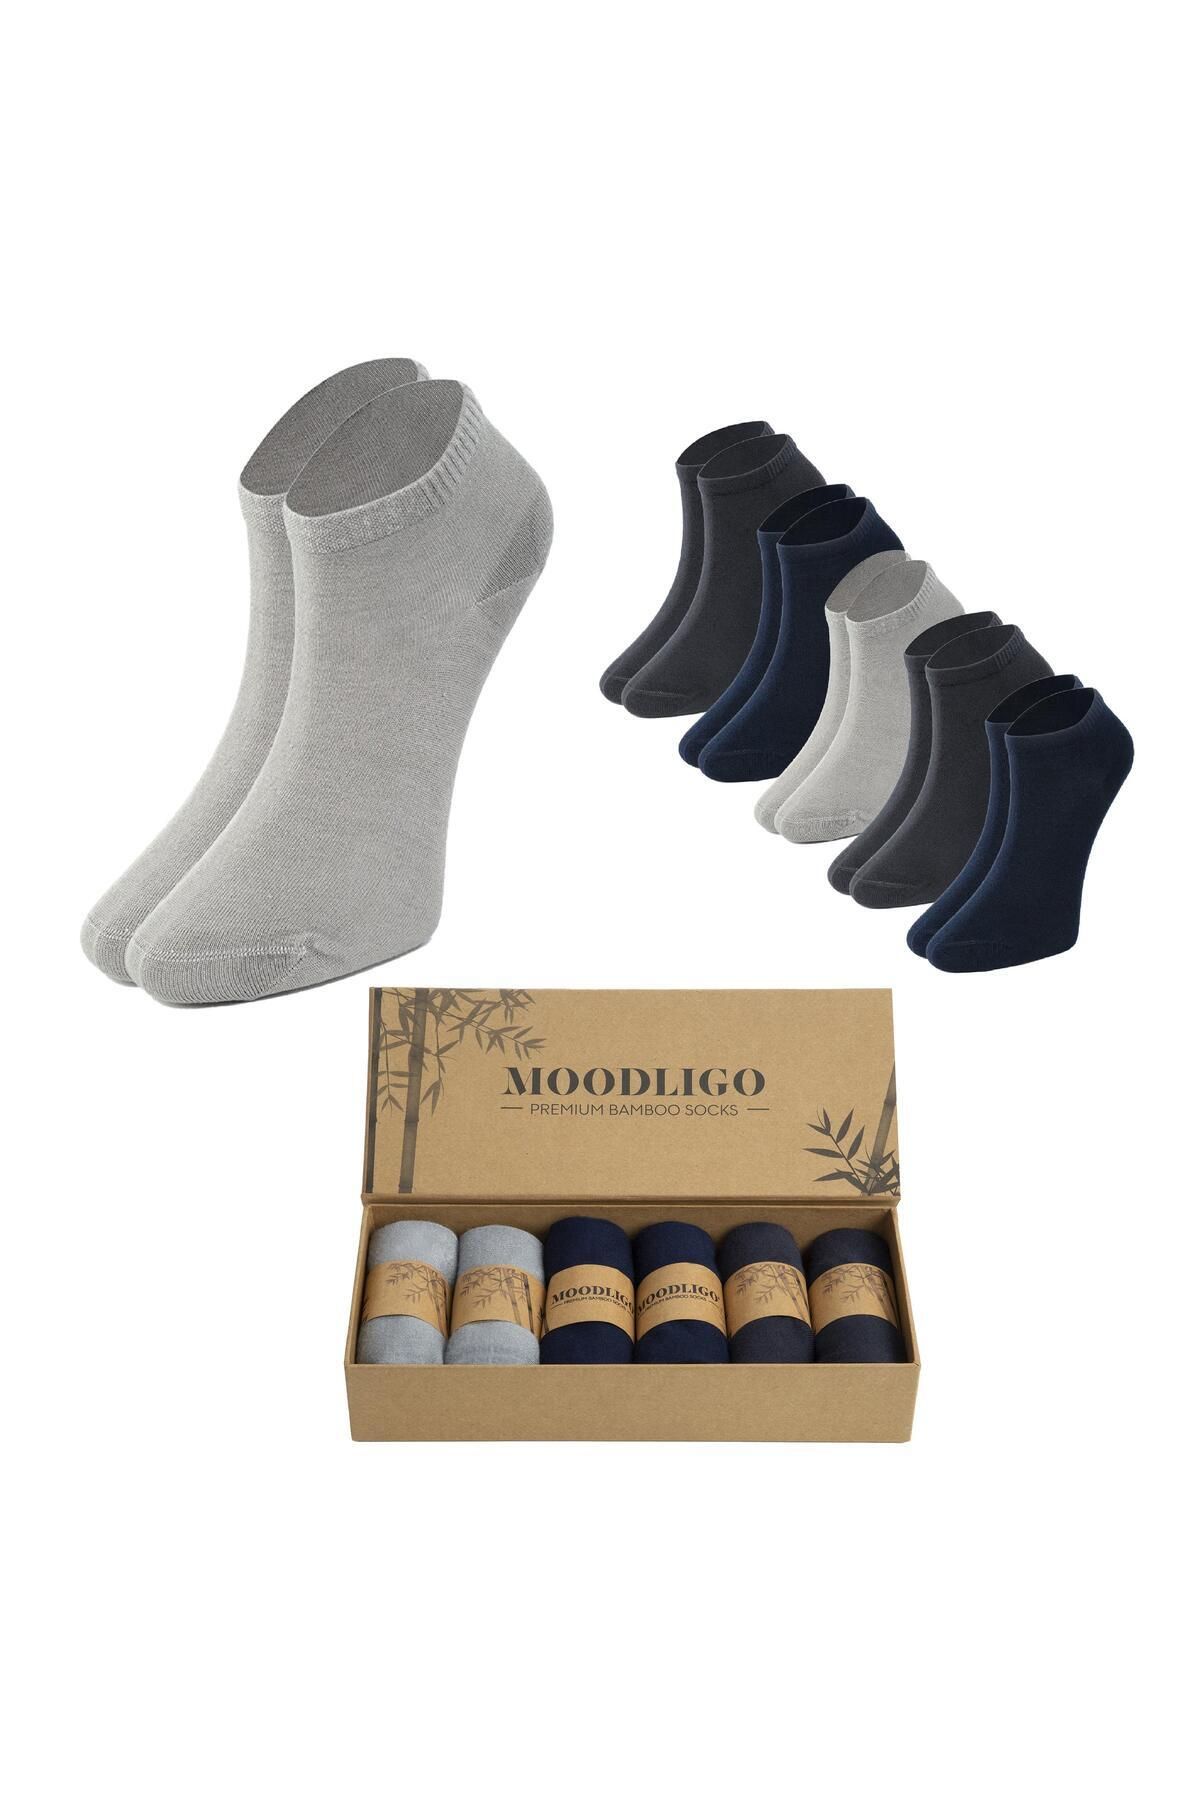 Moodligo Erkek 6'lı Premium Bambu Patik Çorap - 2 Füme 2 Gri 2 Lacivert - Kutulu